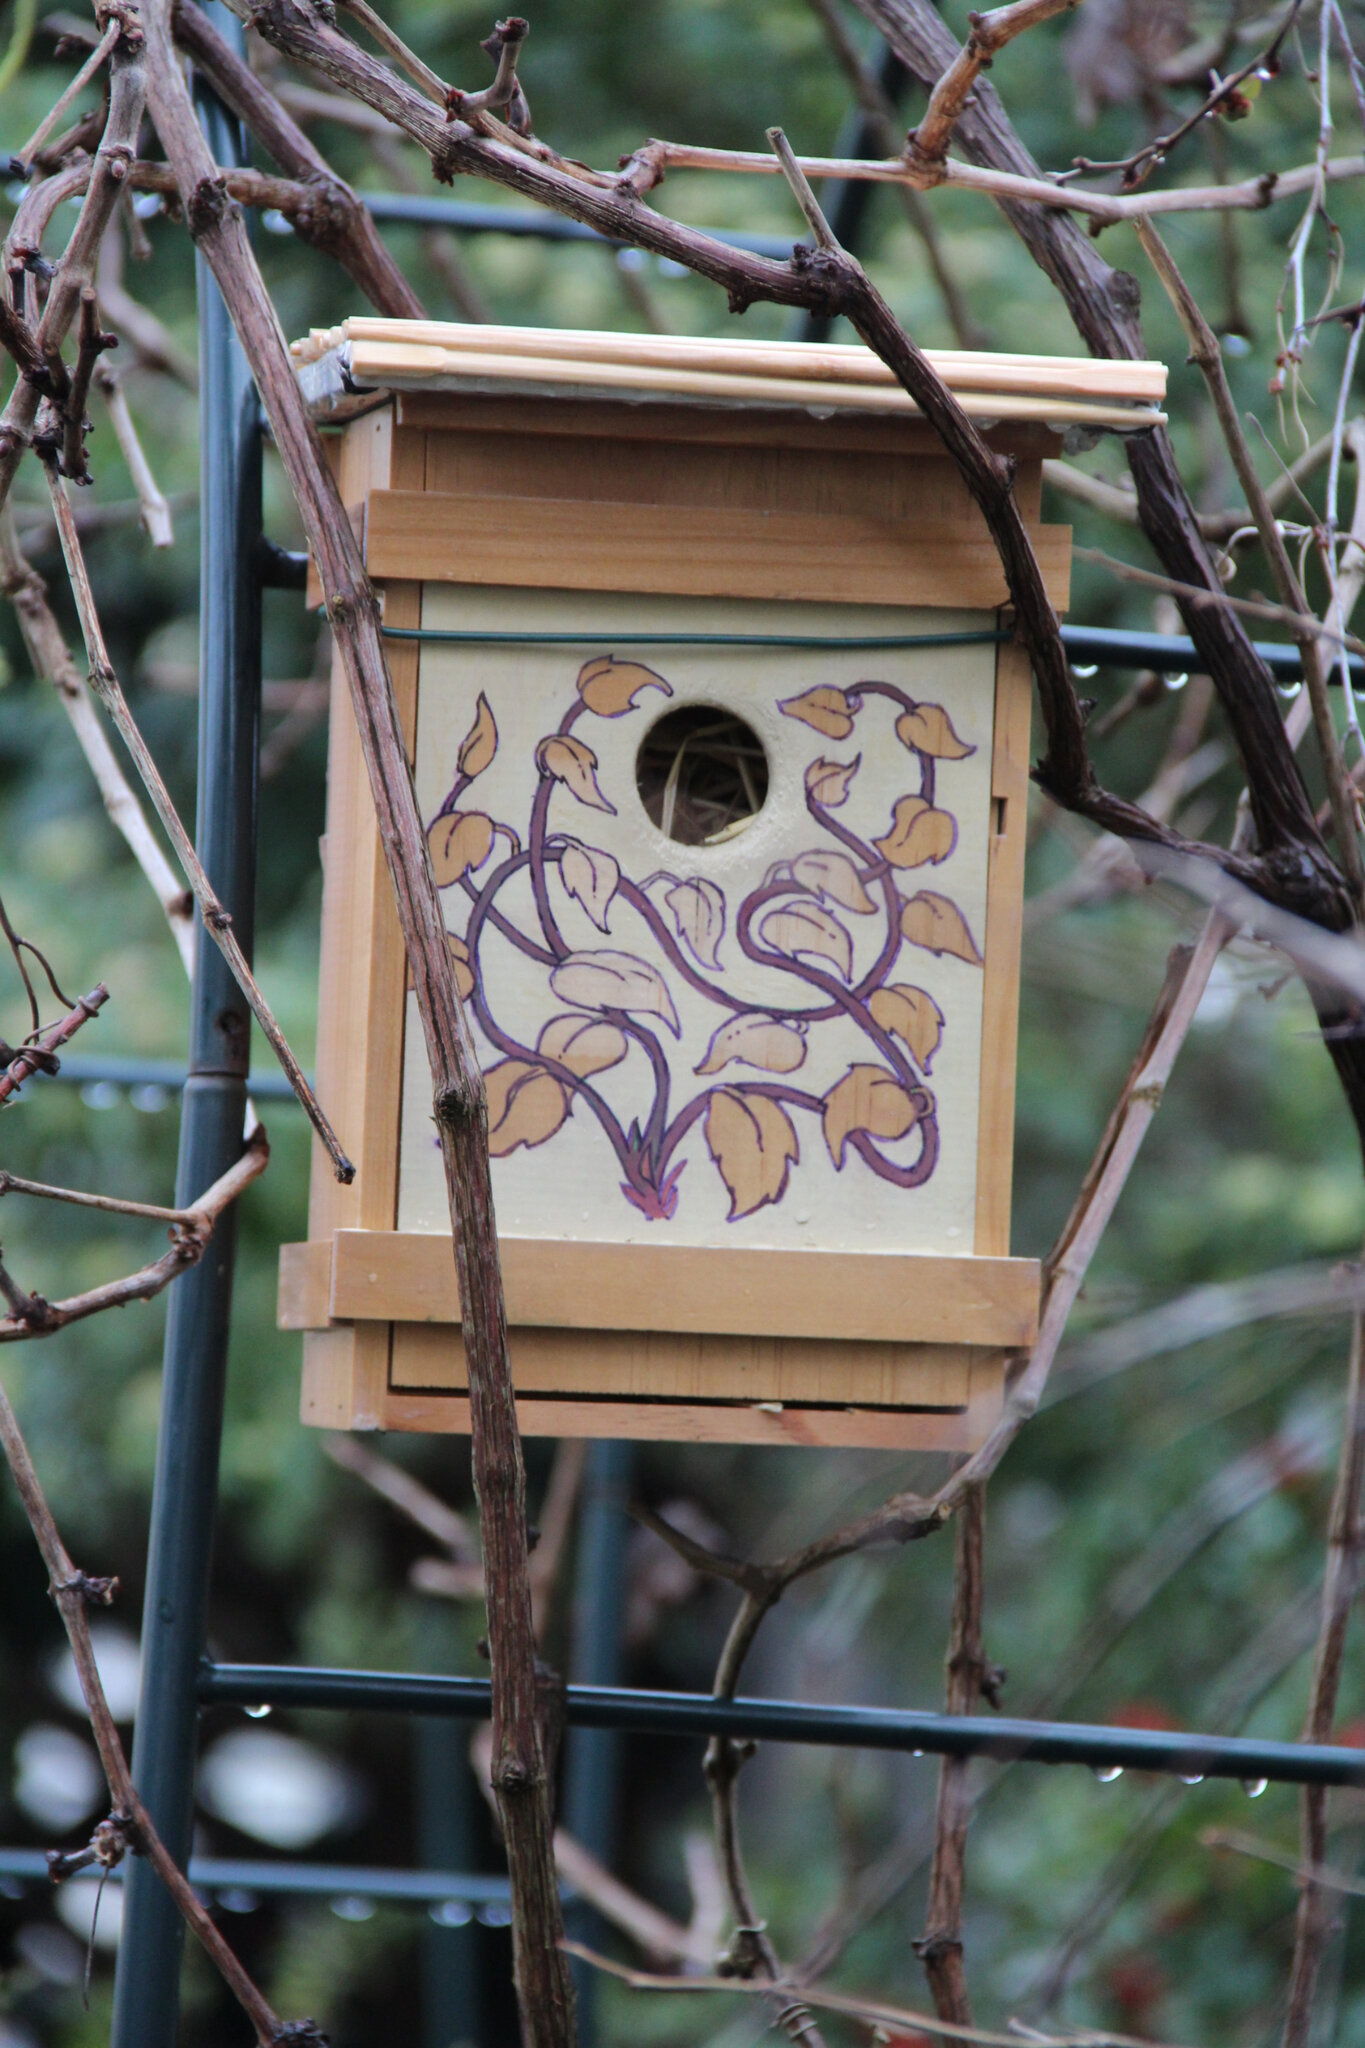 Le nichoir à oiseau : comment le construire et l'installer au jardin ?